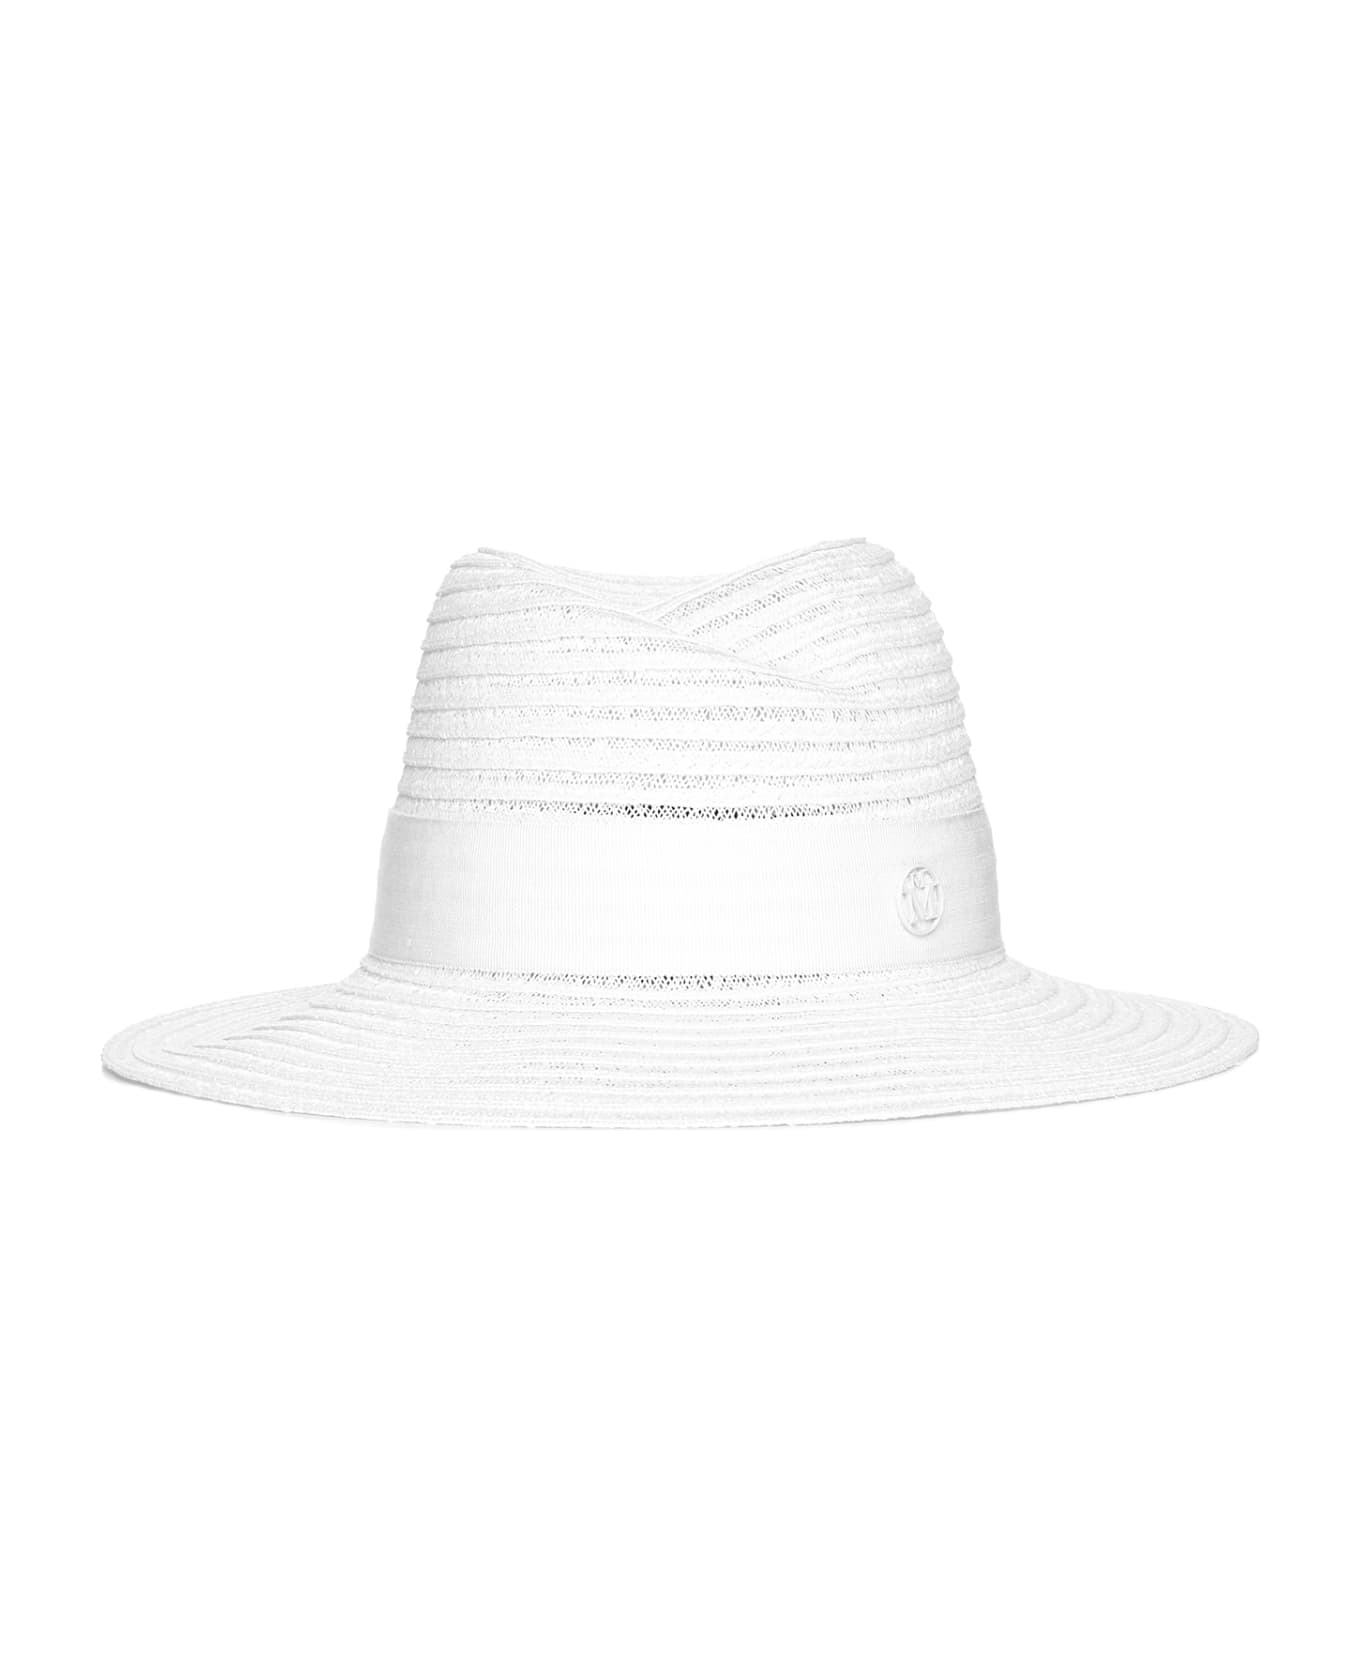 Maison Michel Hat - White 帽子